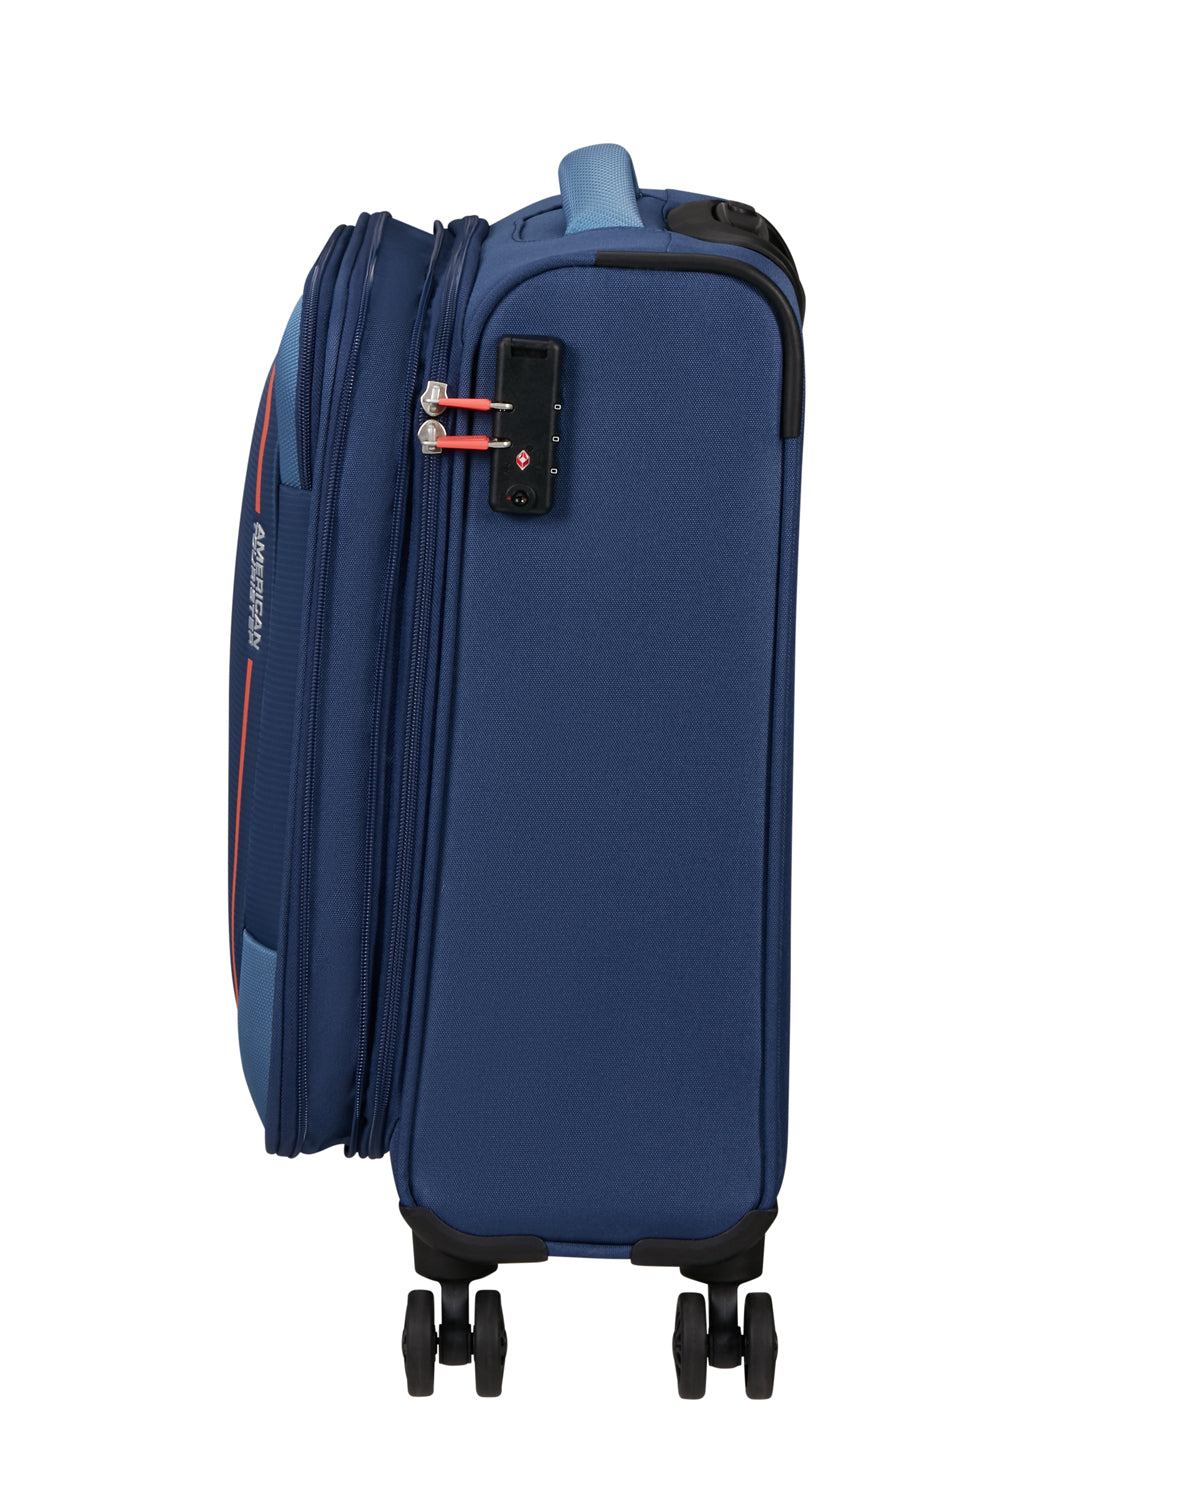 Handbagage koffer 4 wielen H55XB40xD20/23 cm